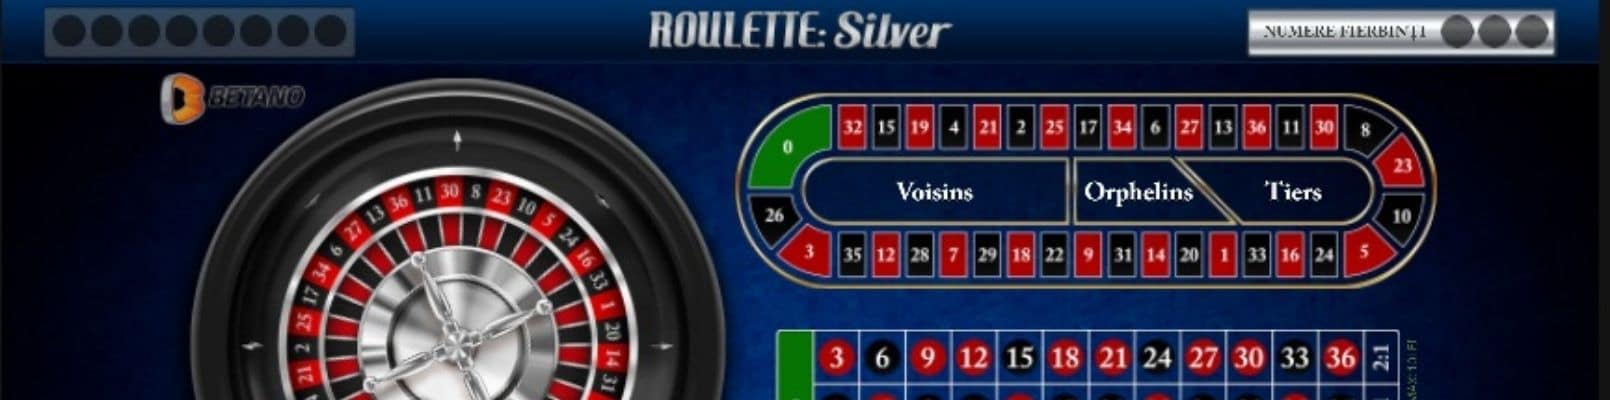 silver ruleta online